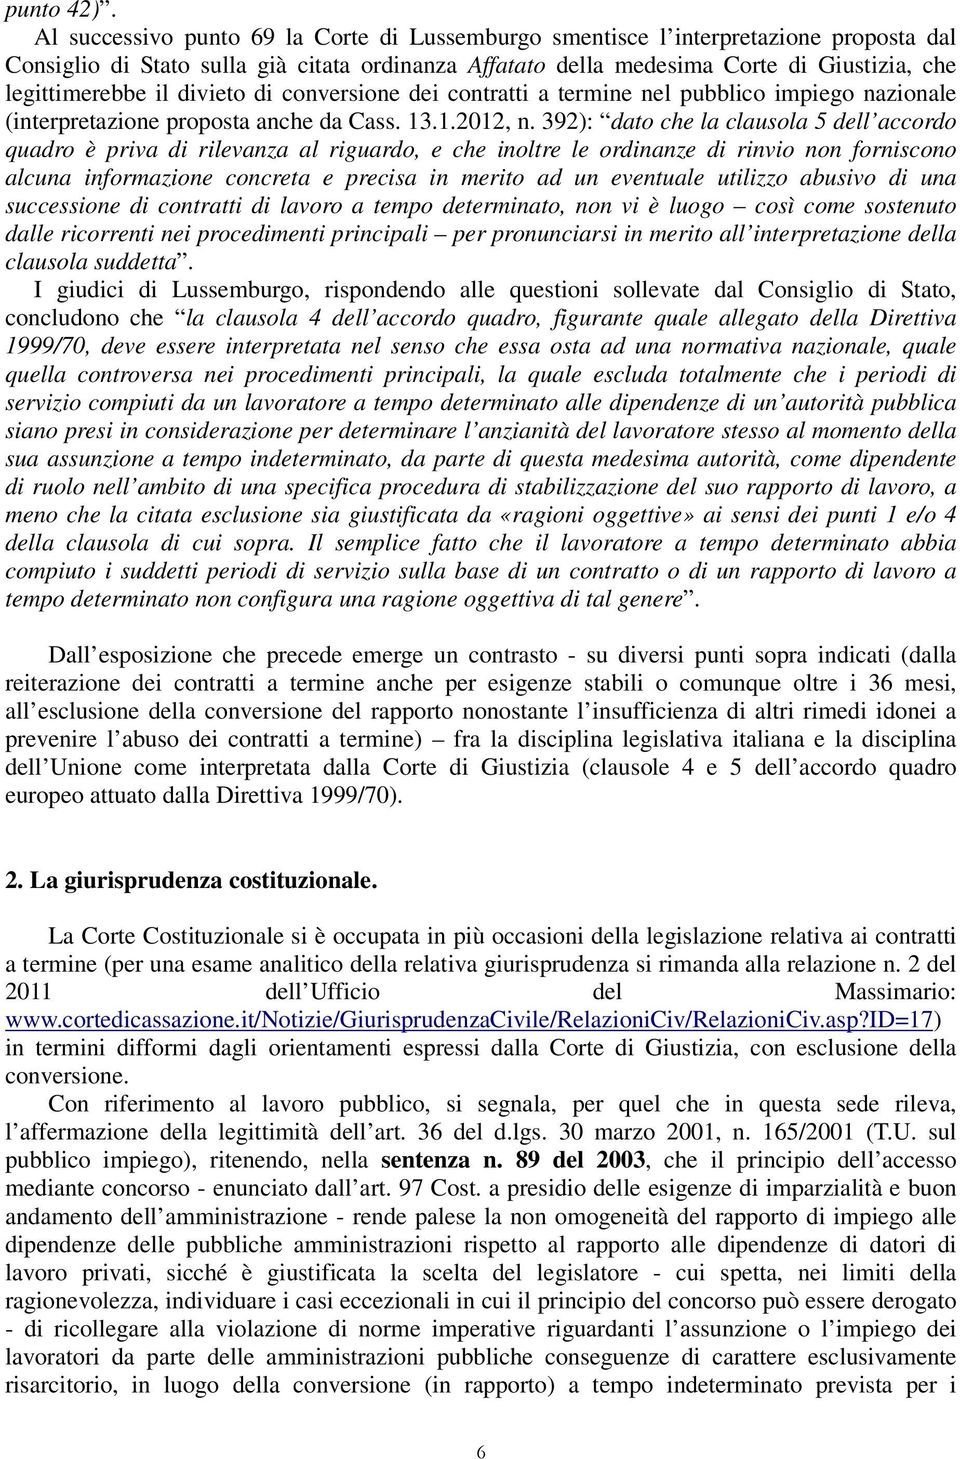 divieto di conversione dei contratti a termine nel pubblico impiego nazionale (interpretazione proposta anche da Cass. 13.1.2012, n.